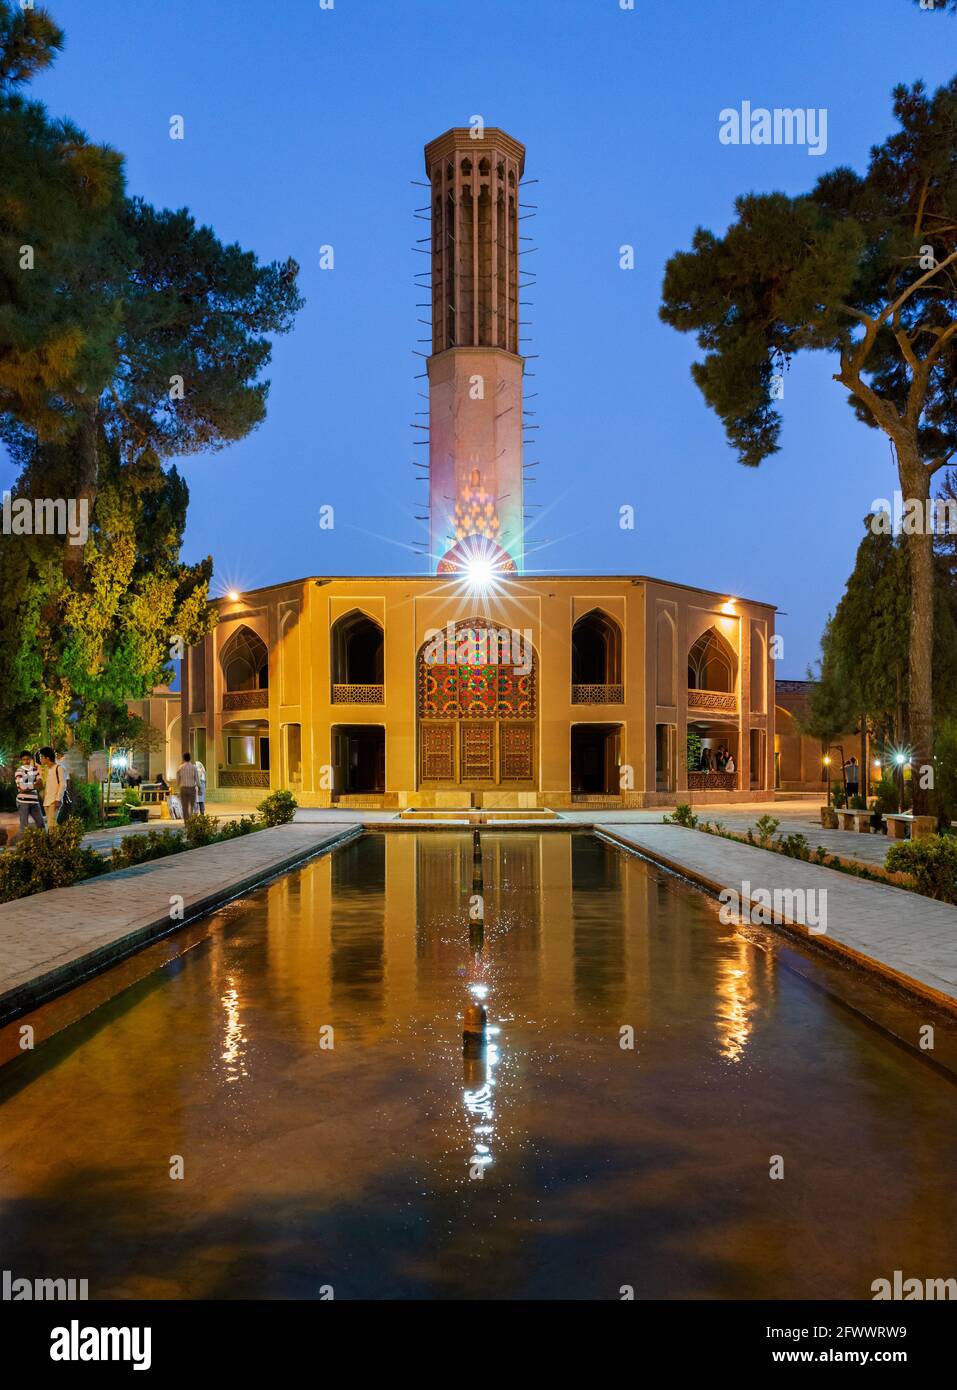 Il Dolat Abad Garden è uno dei 9 giardini iraniani inclusi nella lista dei siti patrimonio dell'umanità dell'UNESCO. Ha 280 anni. Foto Stock